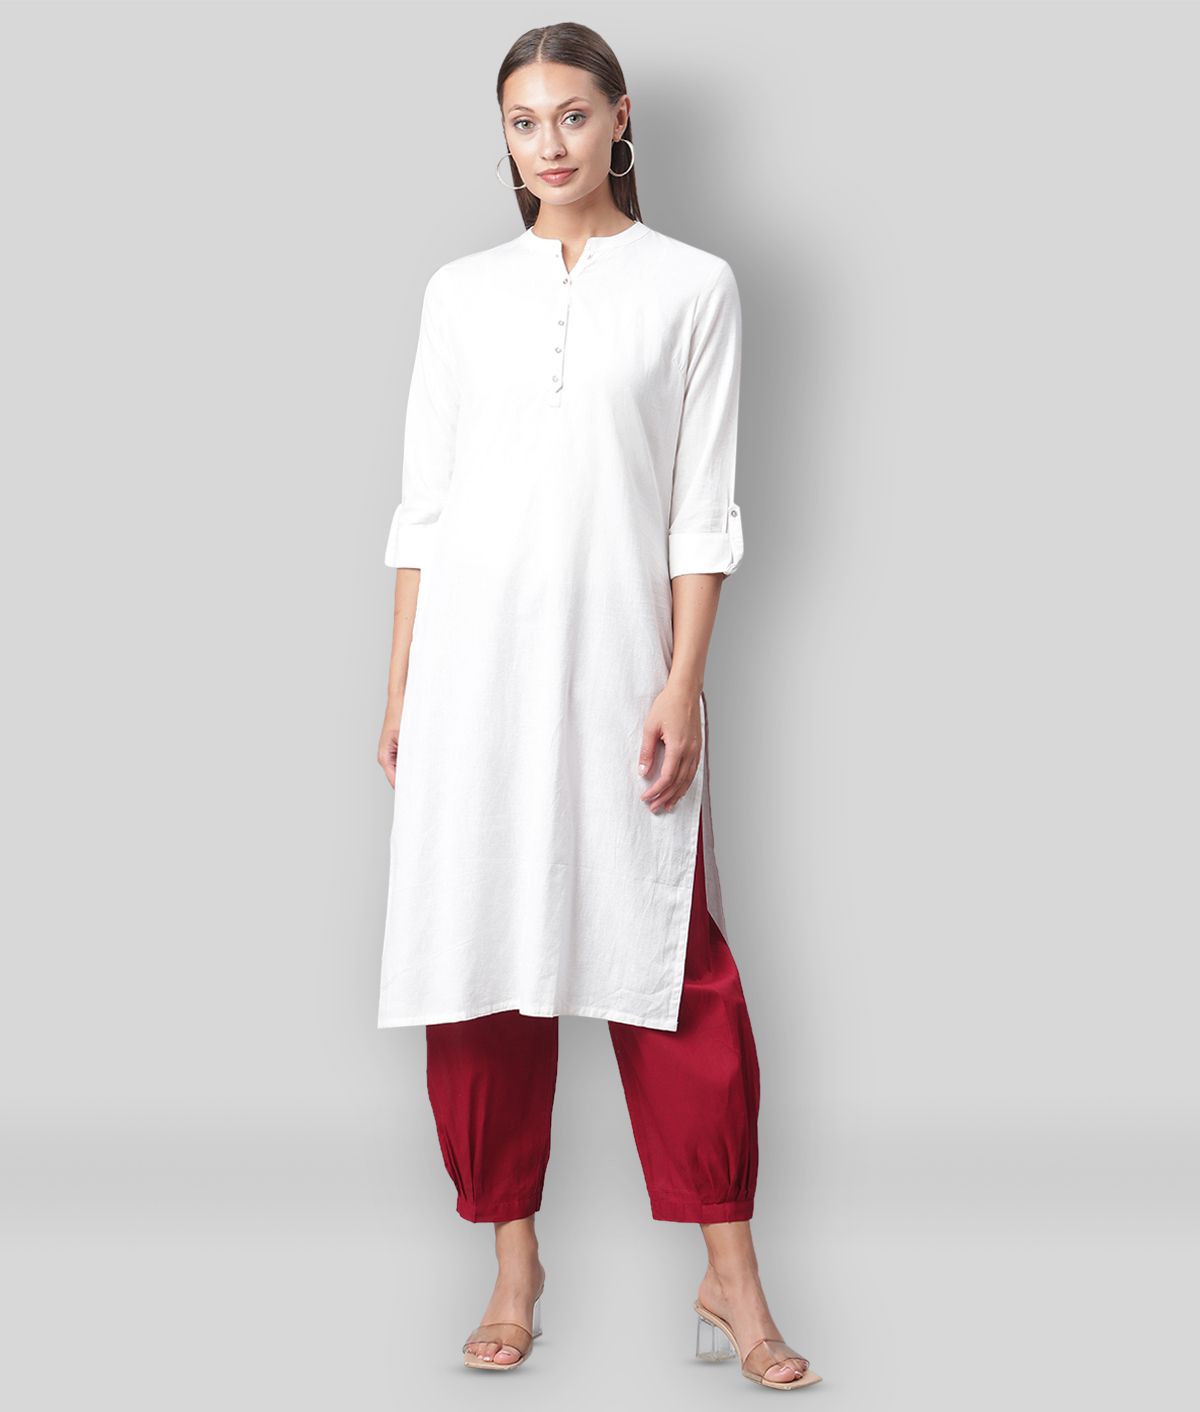     			Divena - White Cotton Blend Women's Straight Kurti